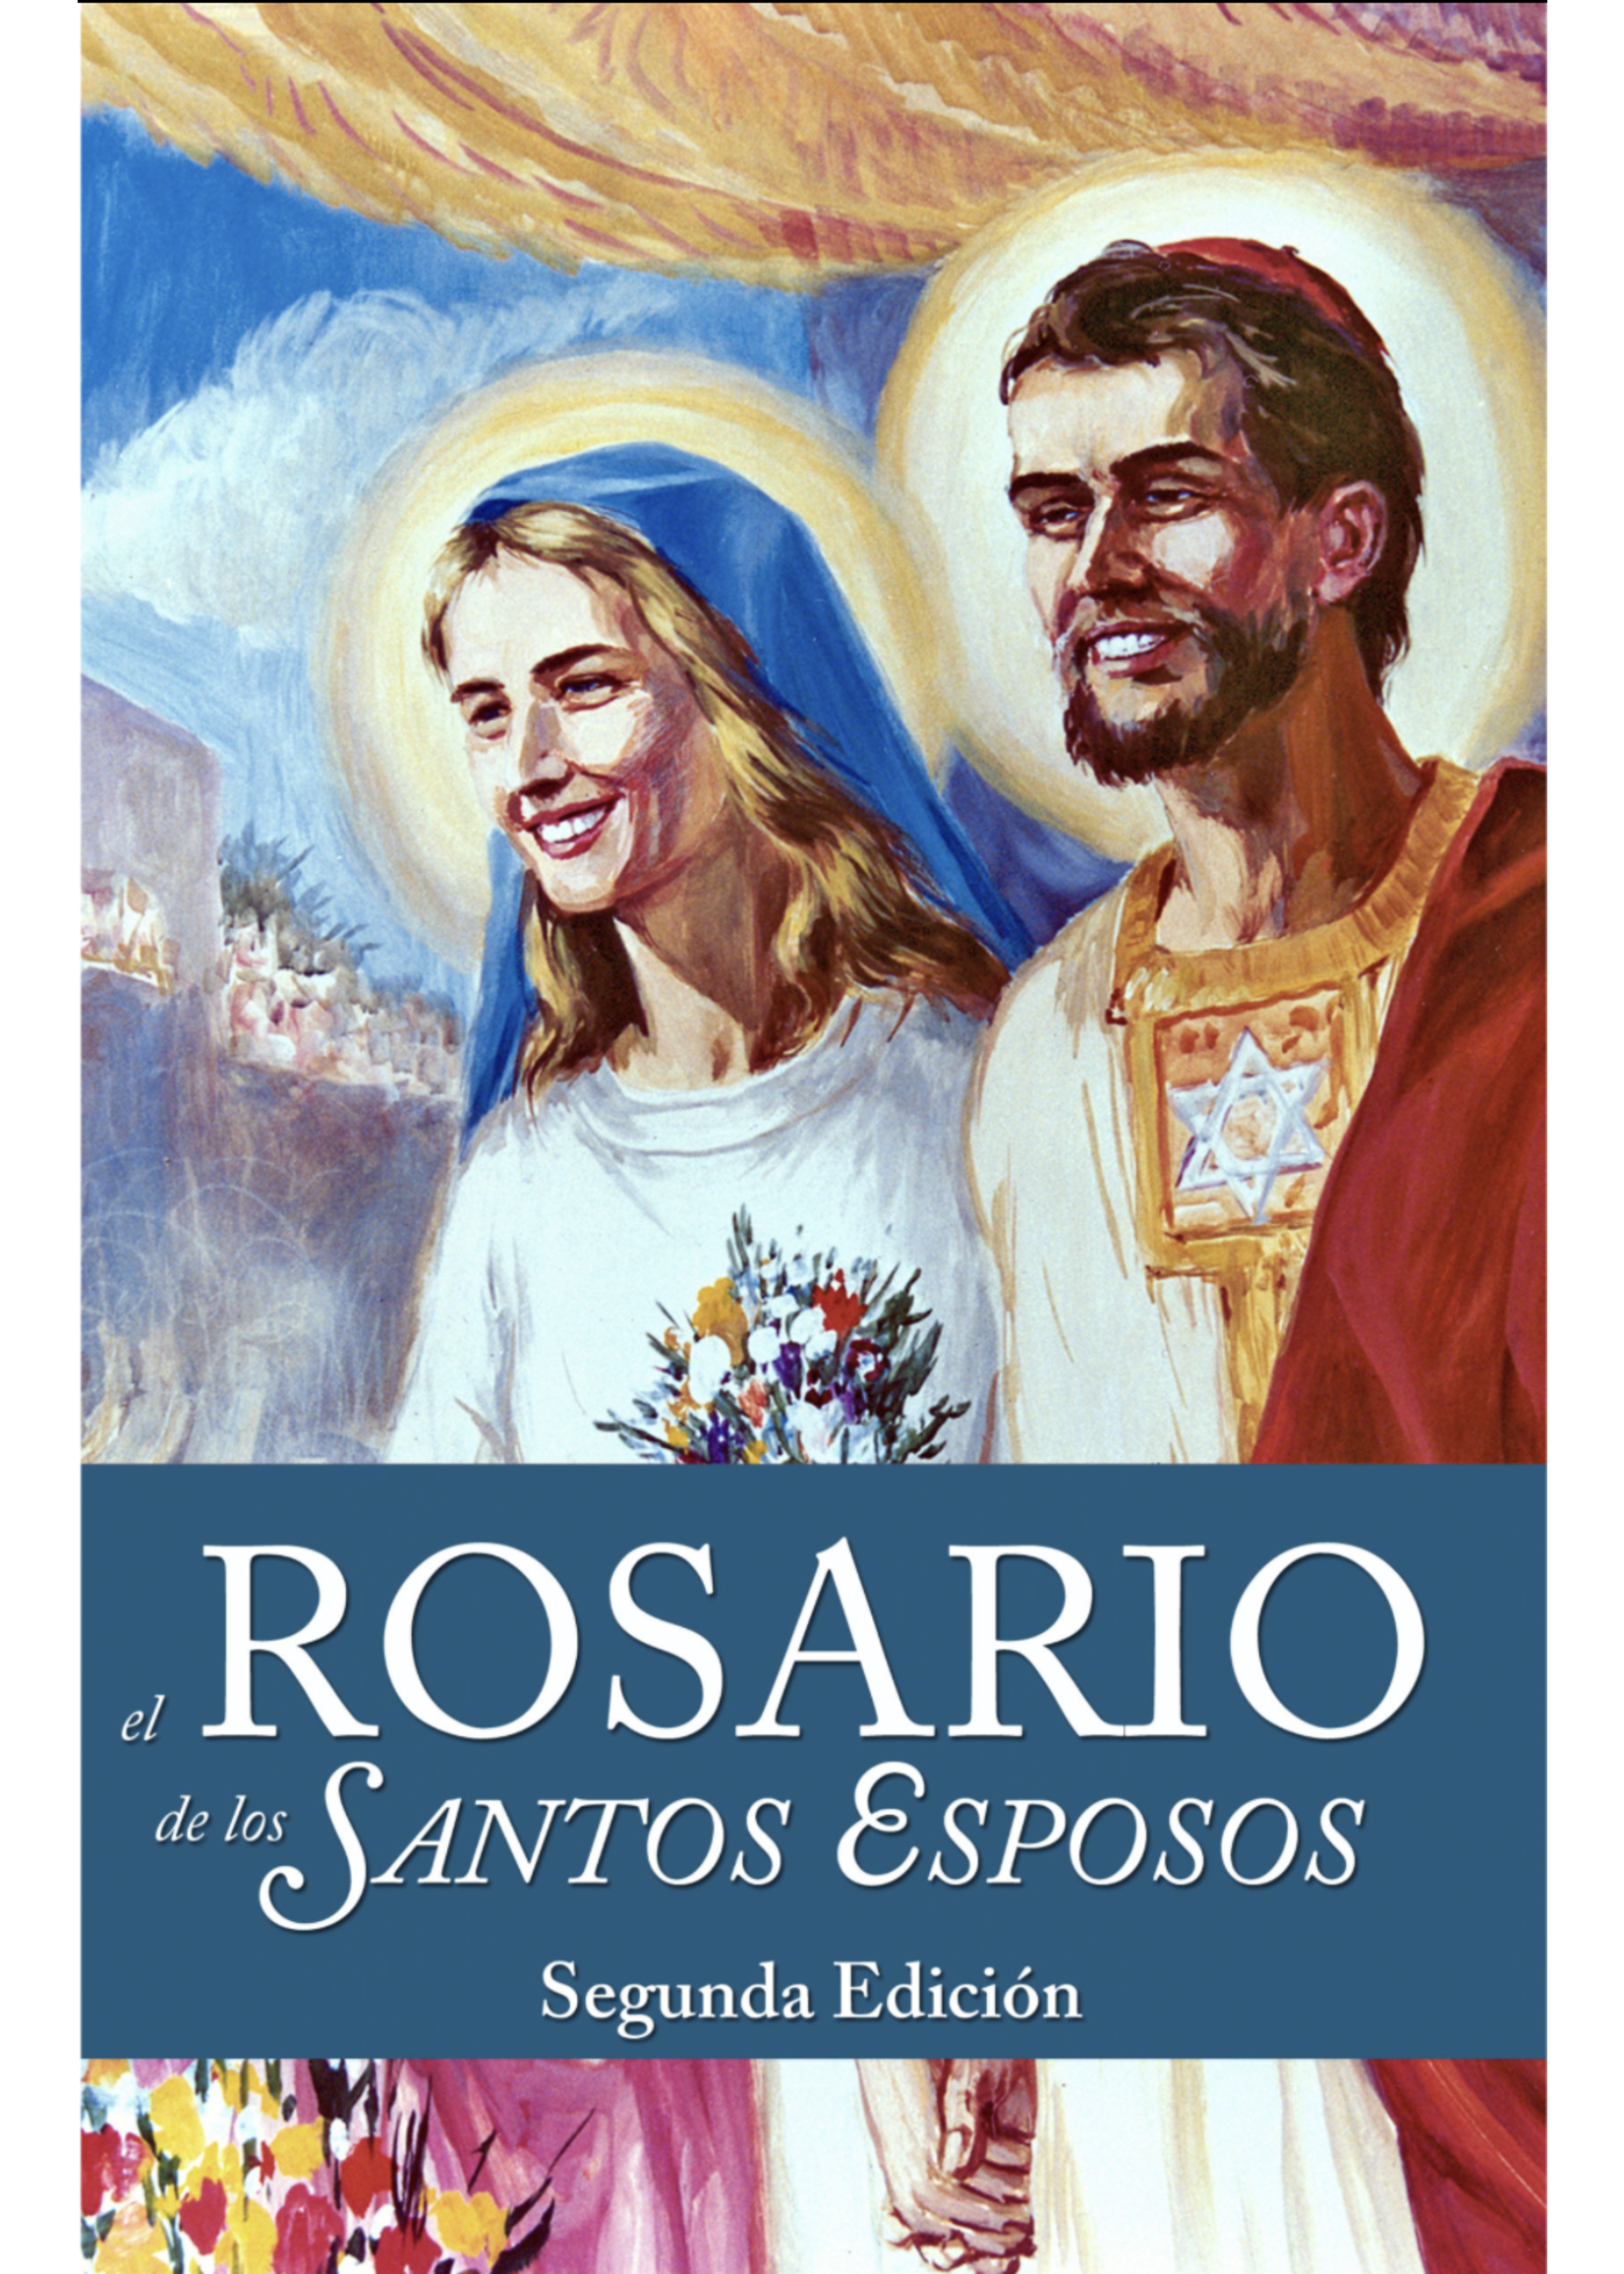 el Rosario de los Santos Esposos, Segunda Edicion